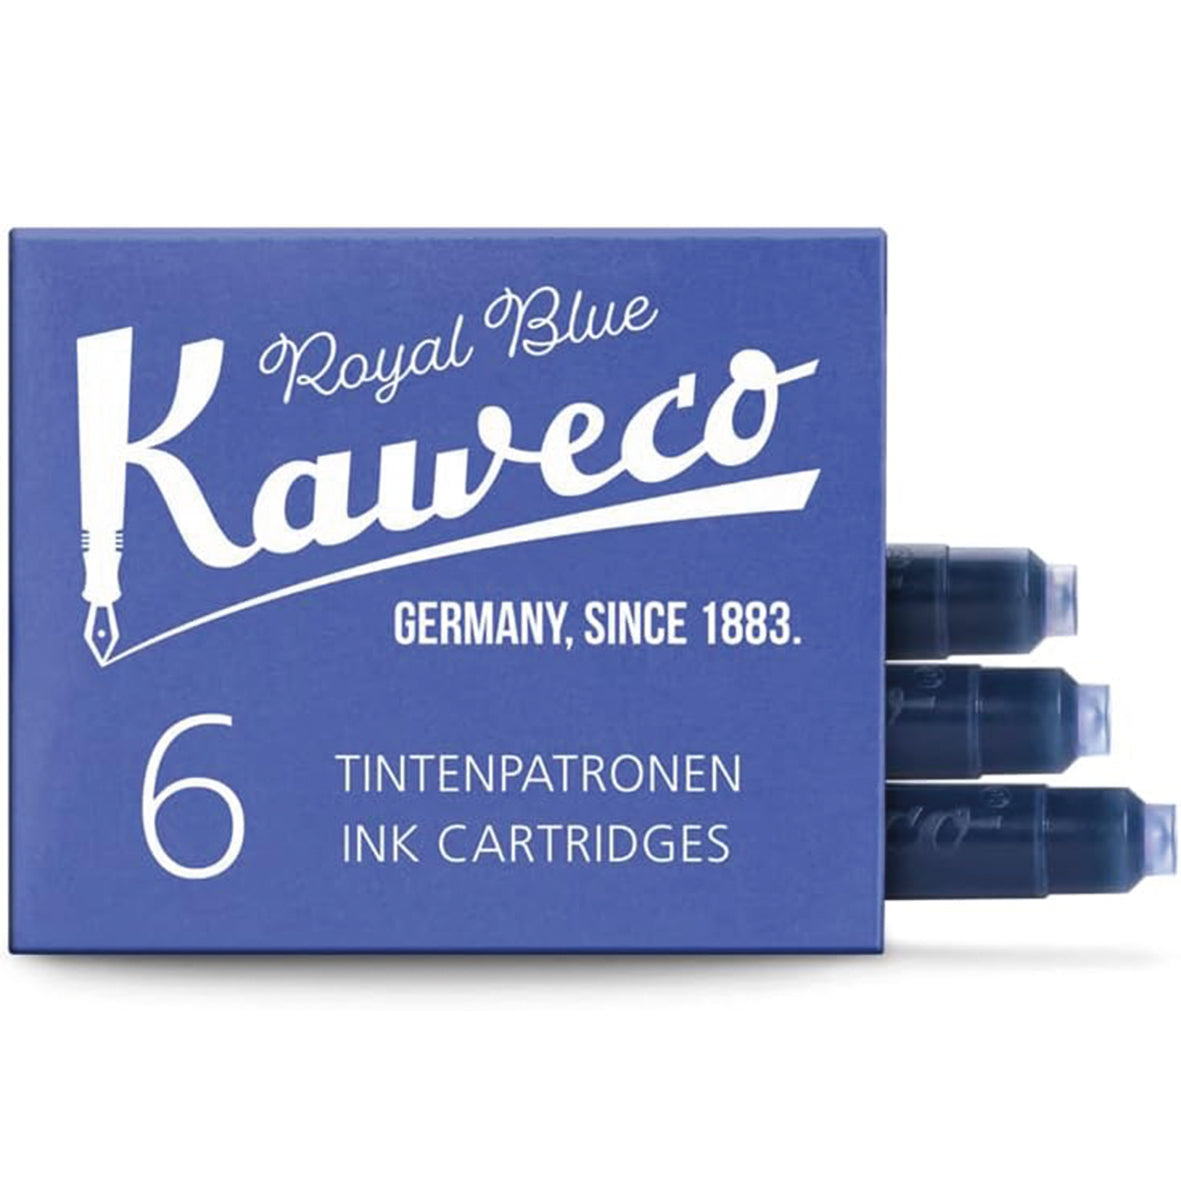 Tintenpatronen Kaweco Royal Blue, 6 Stück